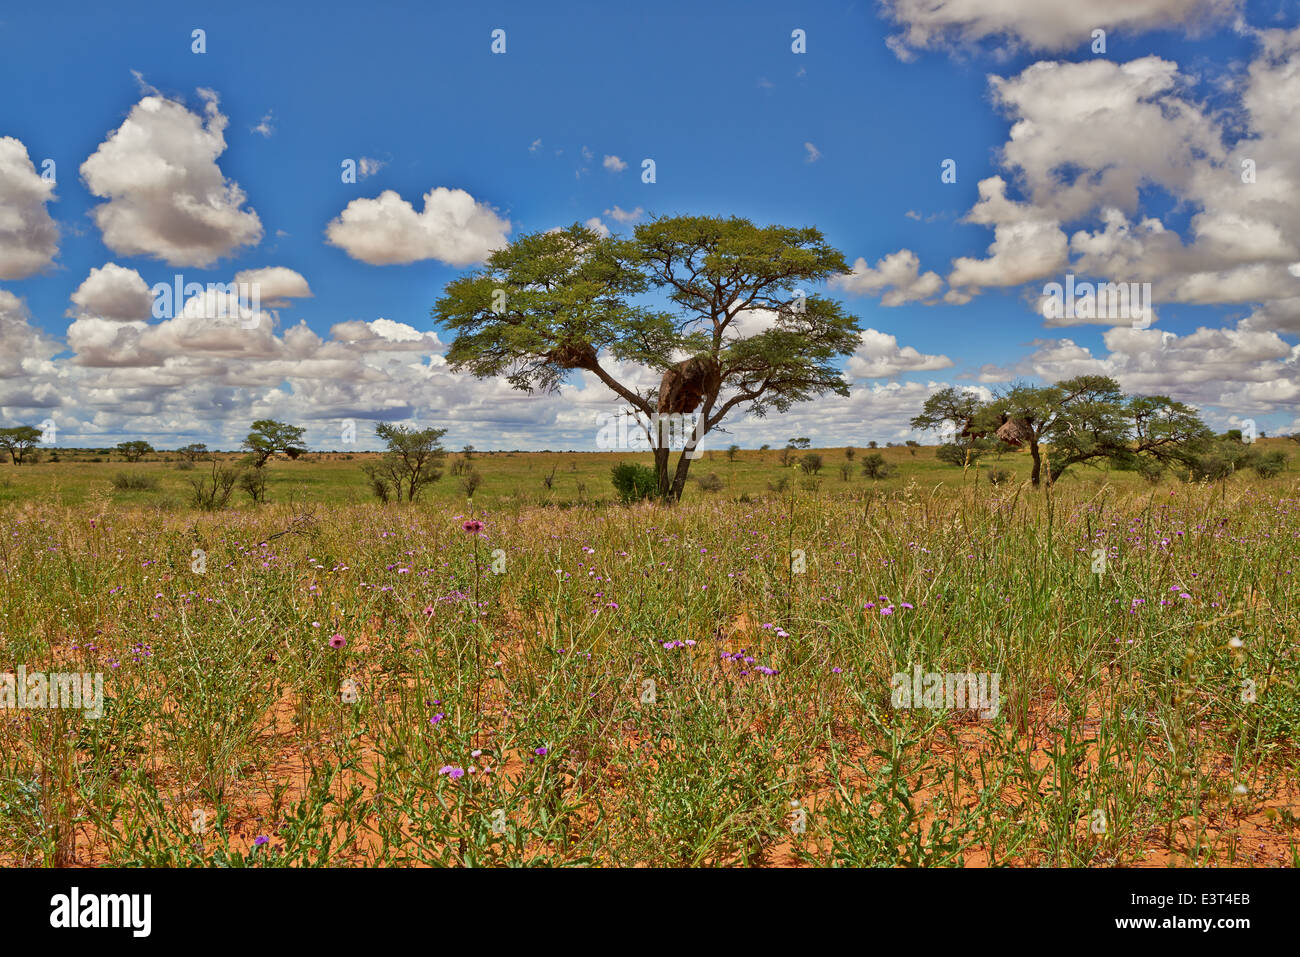 Paysage avec arbres d'acacia dans Kgalagadi Transfrontier Park, Kalahari, Afrique du Sud, Botswana, Africa Banque D'Images